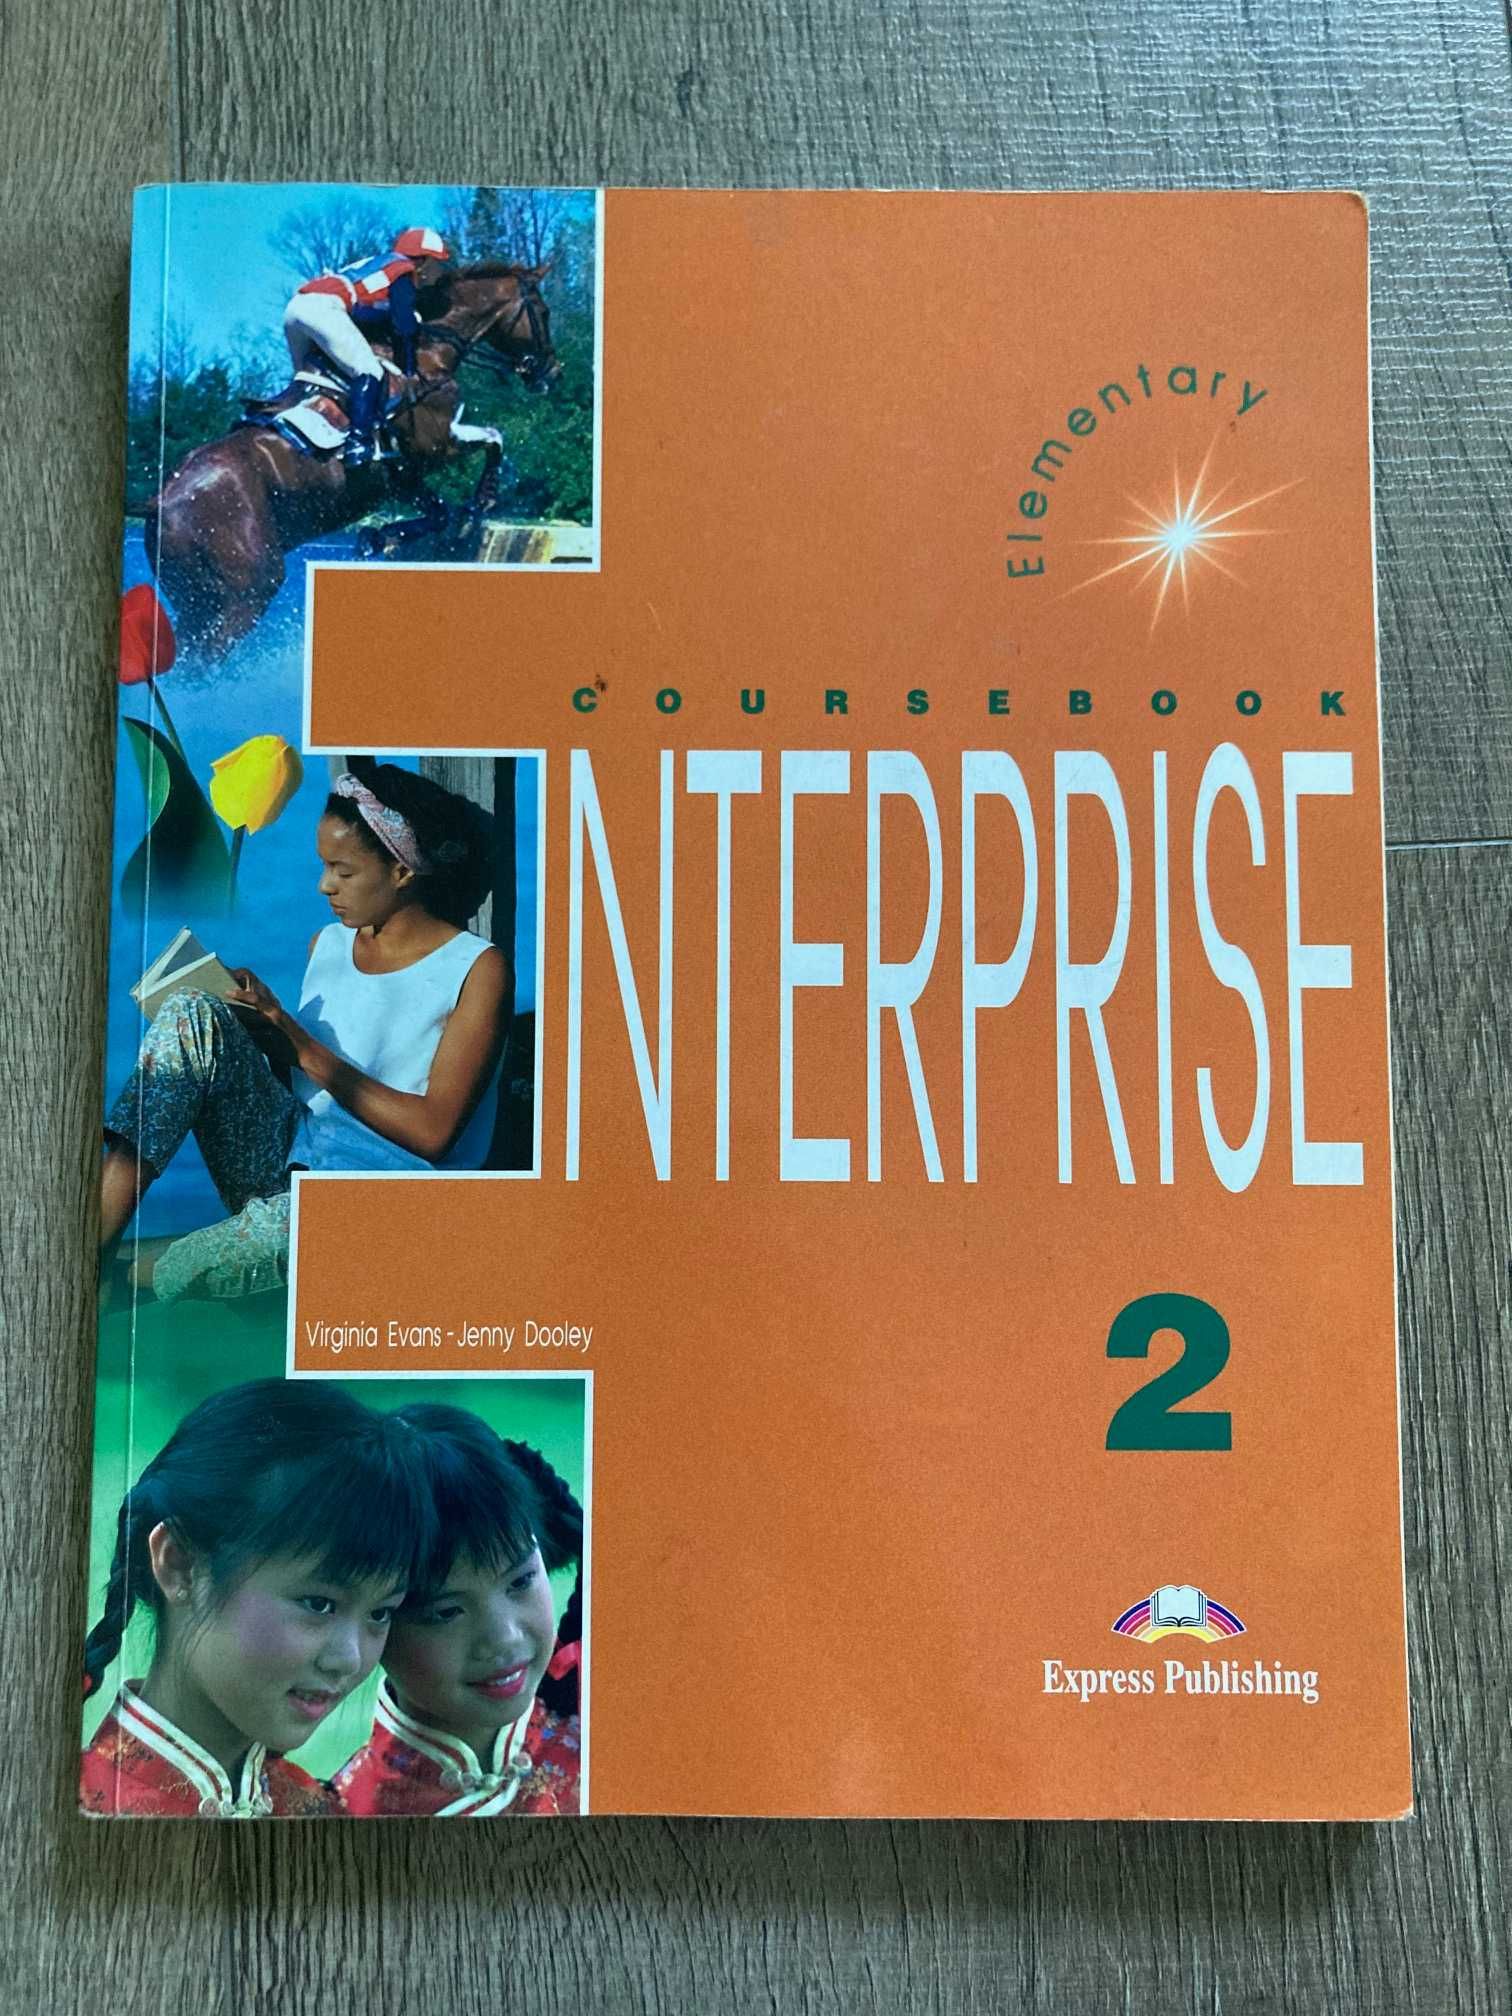 Komplet książek angielski Enterprise english 2 3 4 kurs